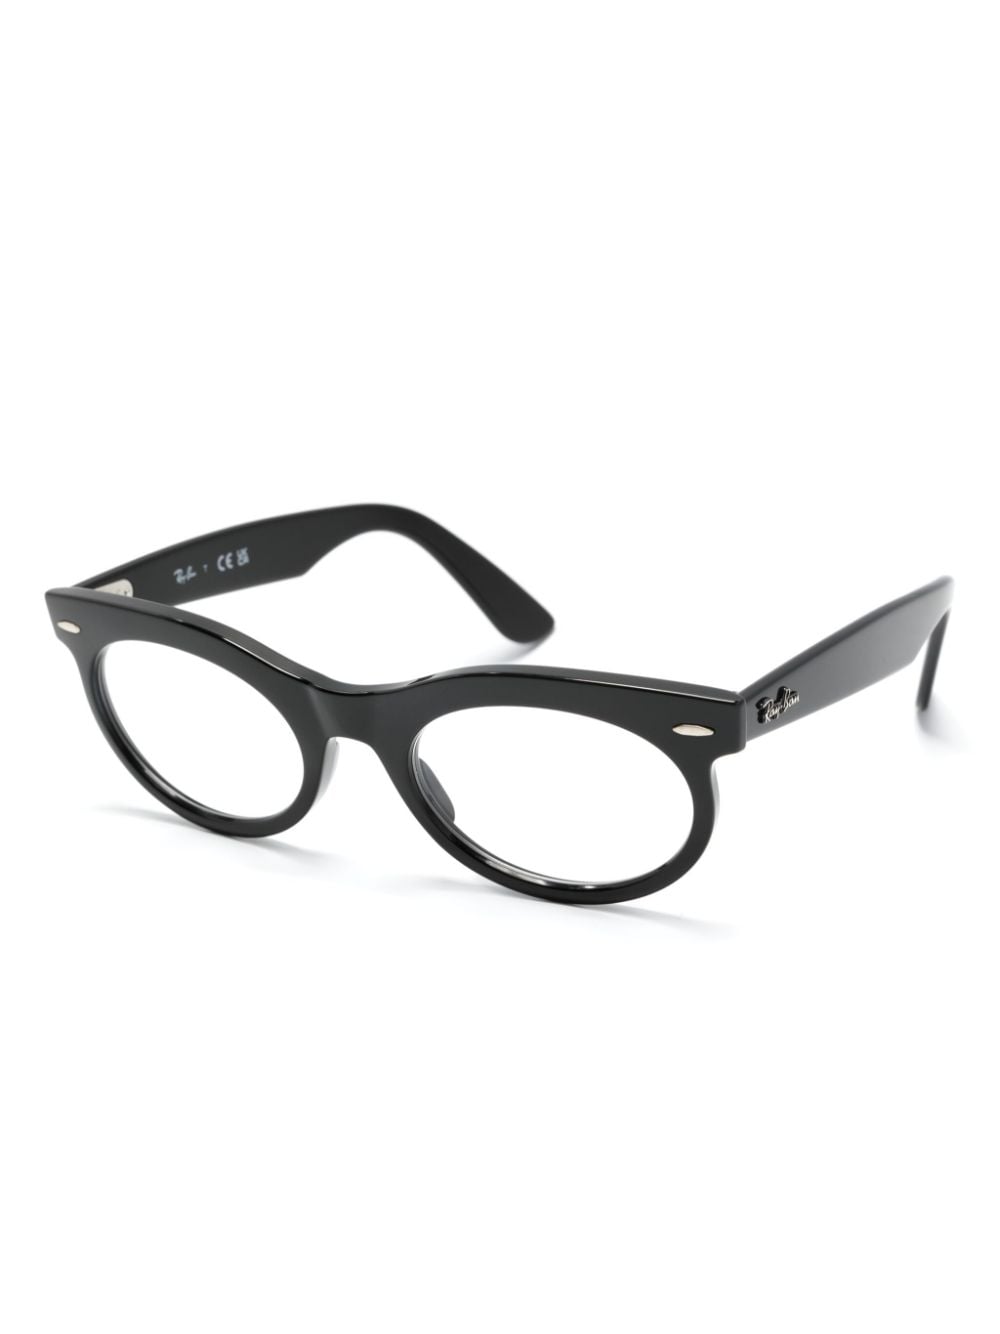 Ray-Ban Wayfarer bril met ovalen montuur - Zwart